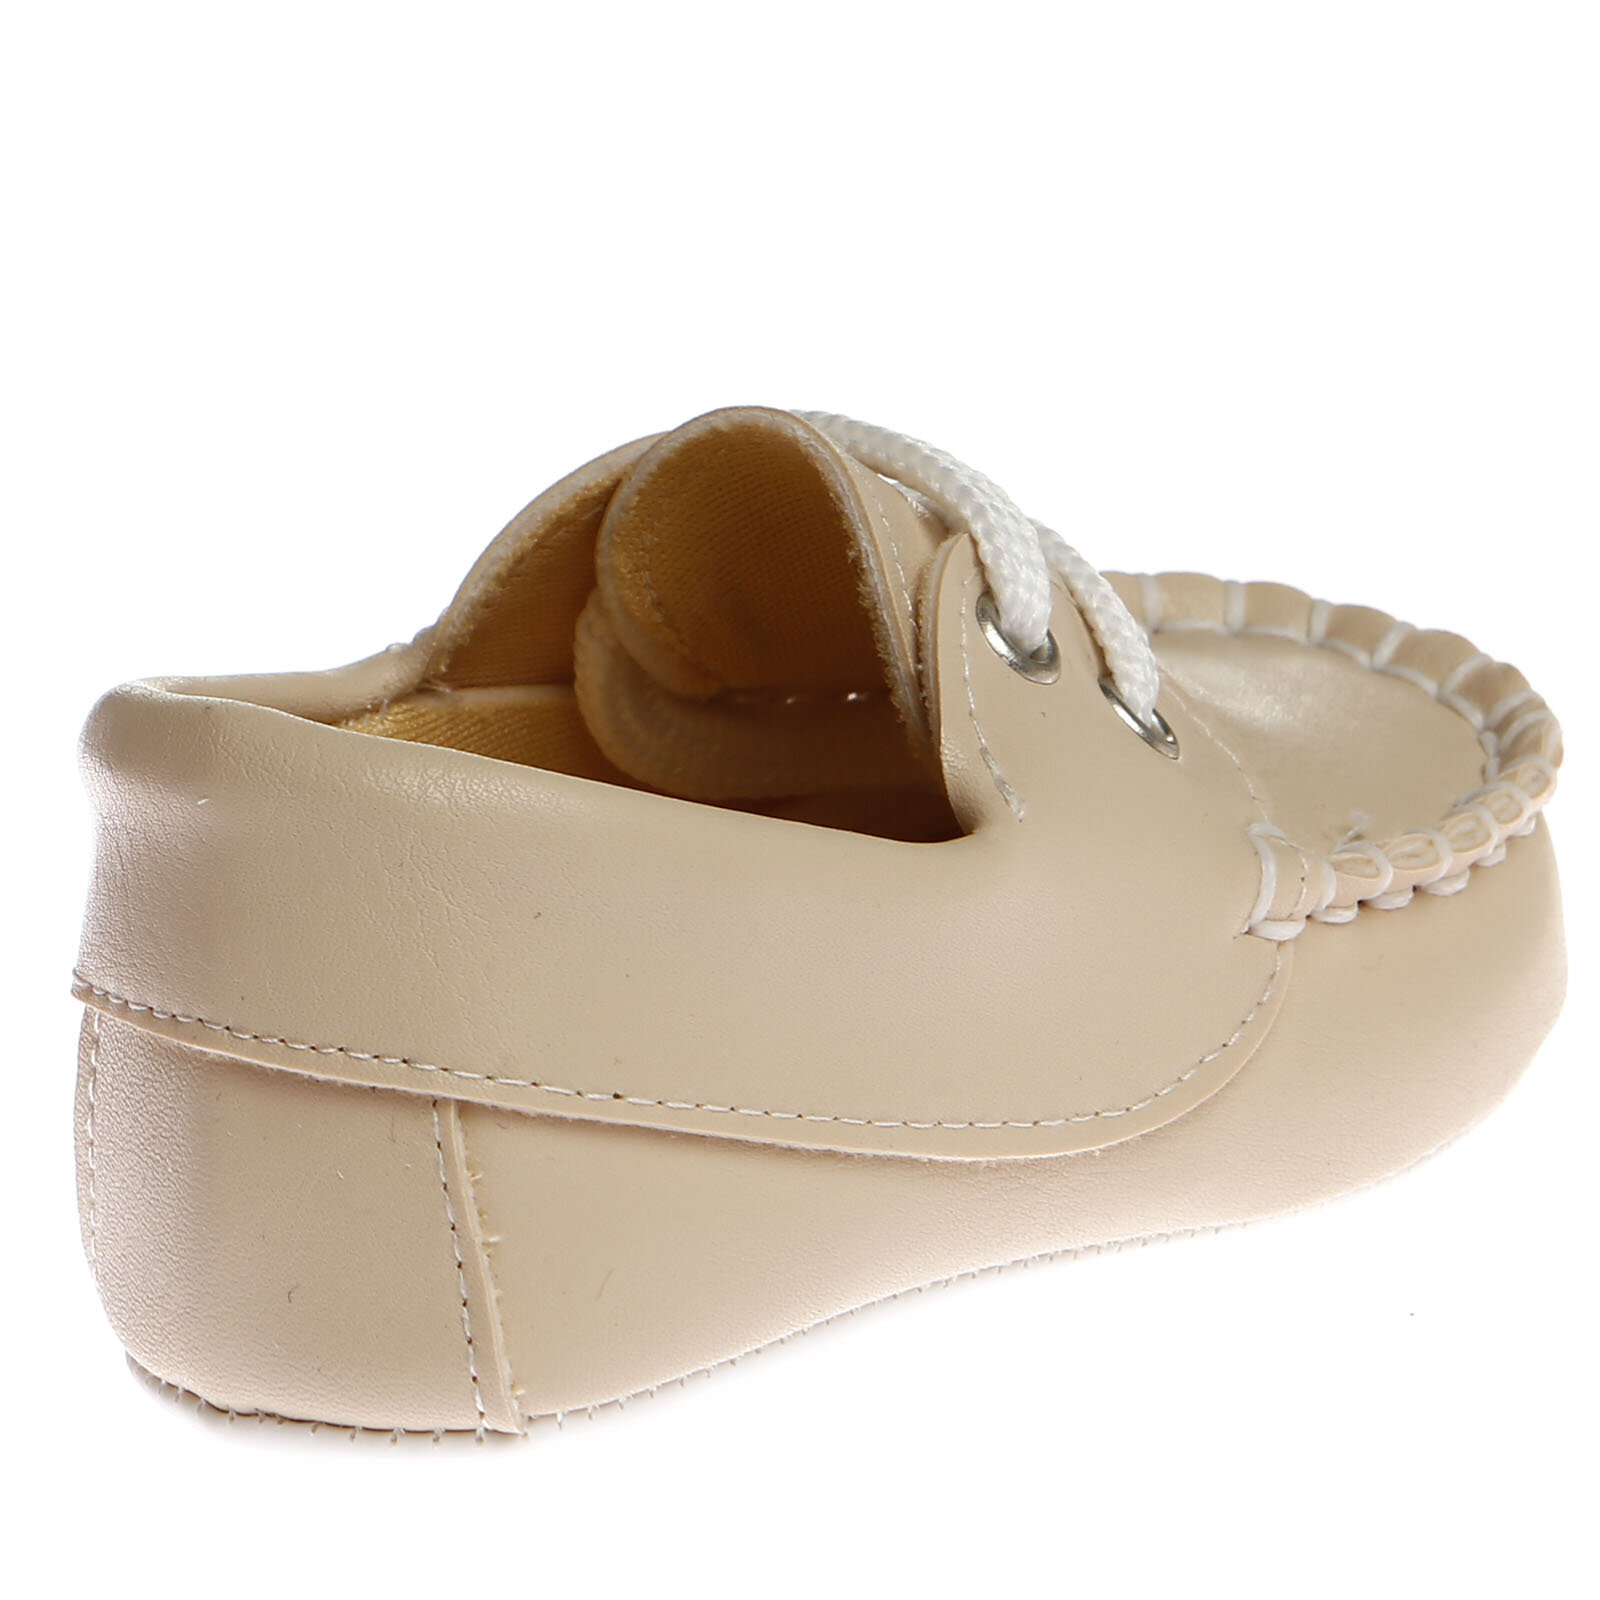 Klasik Model Patik Ayakkabı Erkek Bebek